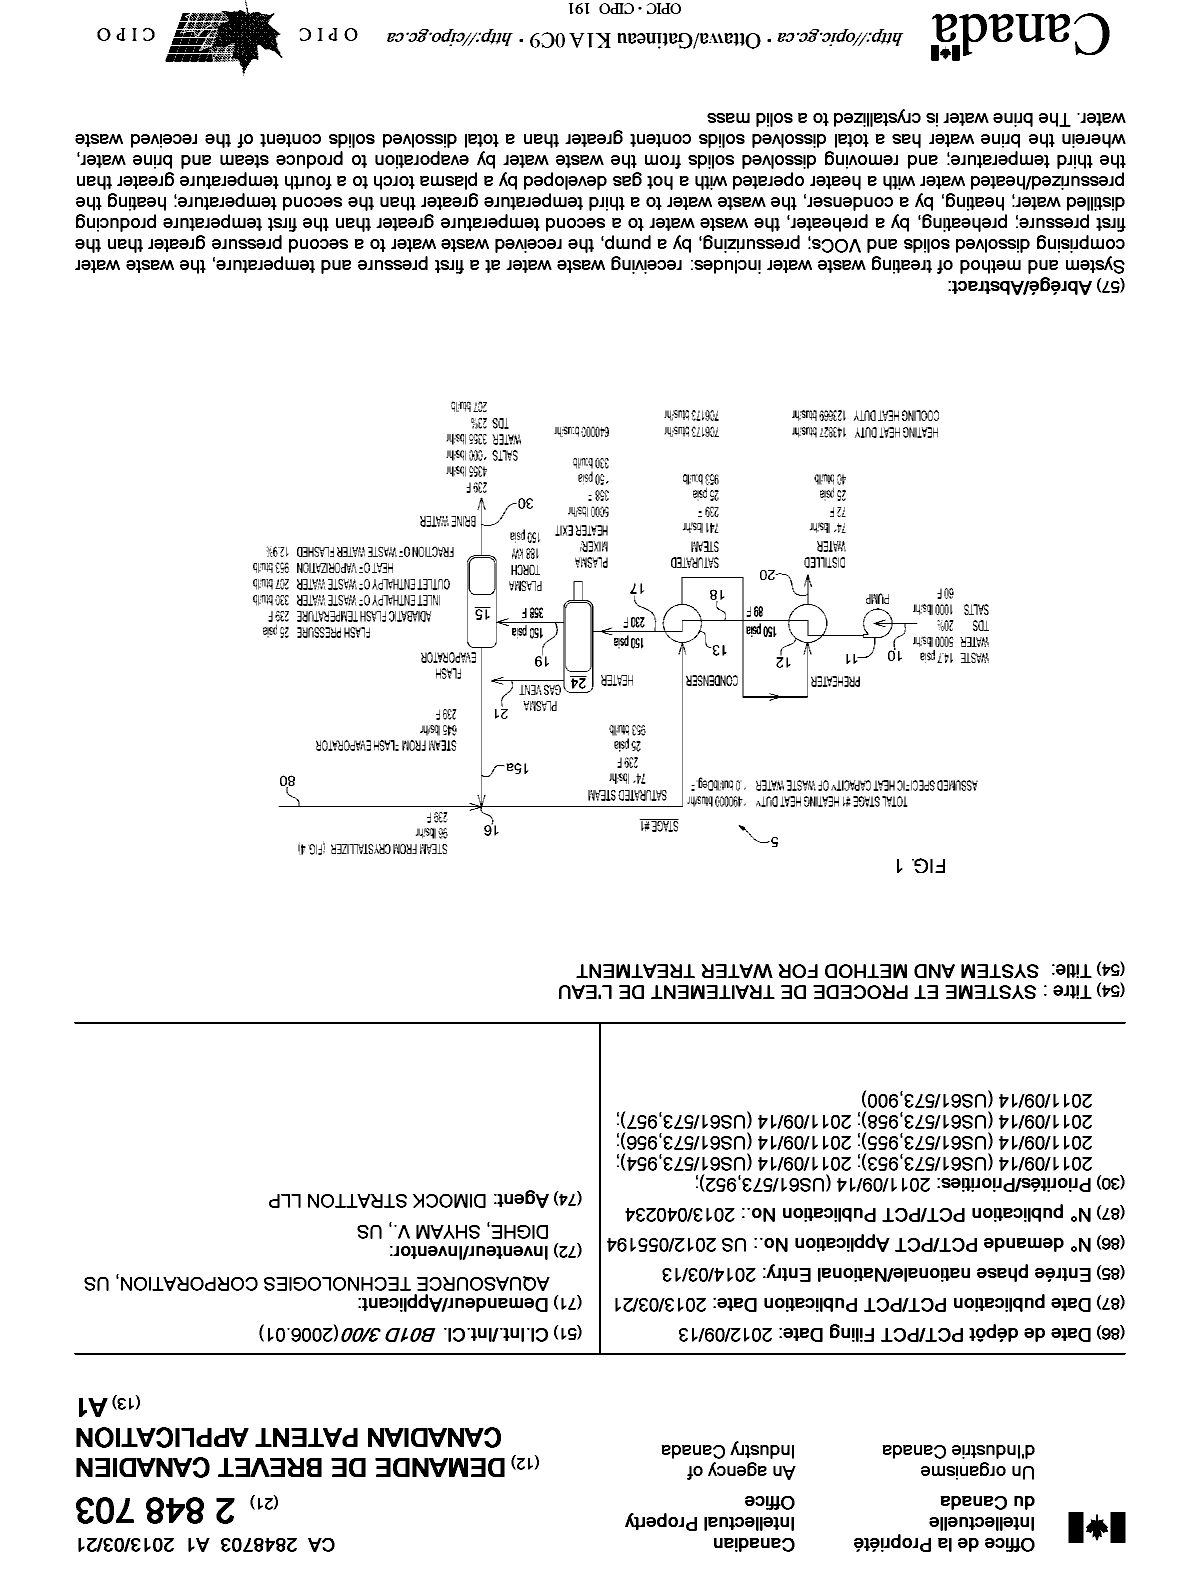 Document de brevet canadien 2848703. Page couverture 20131228. Image 1 de 1